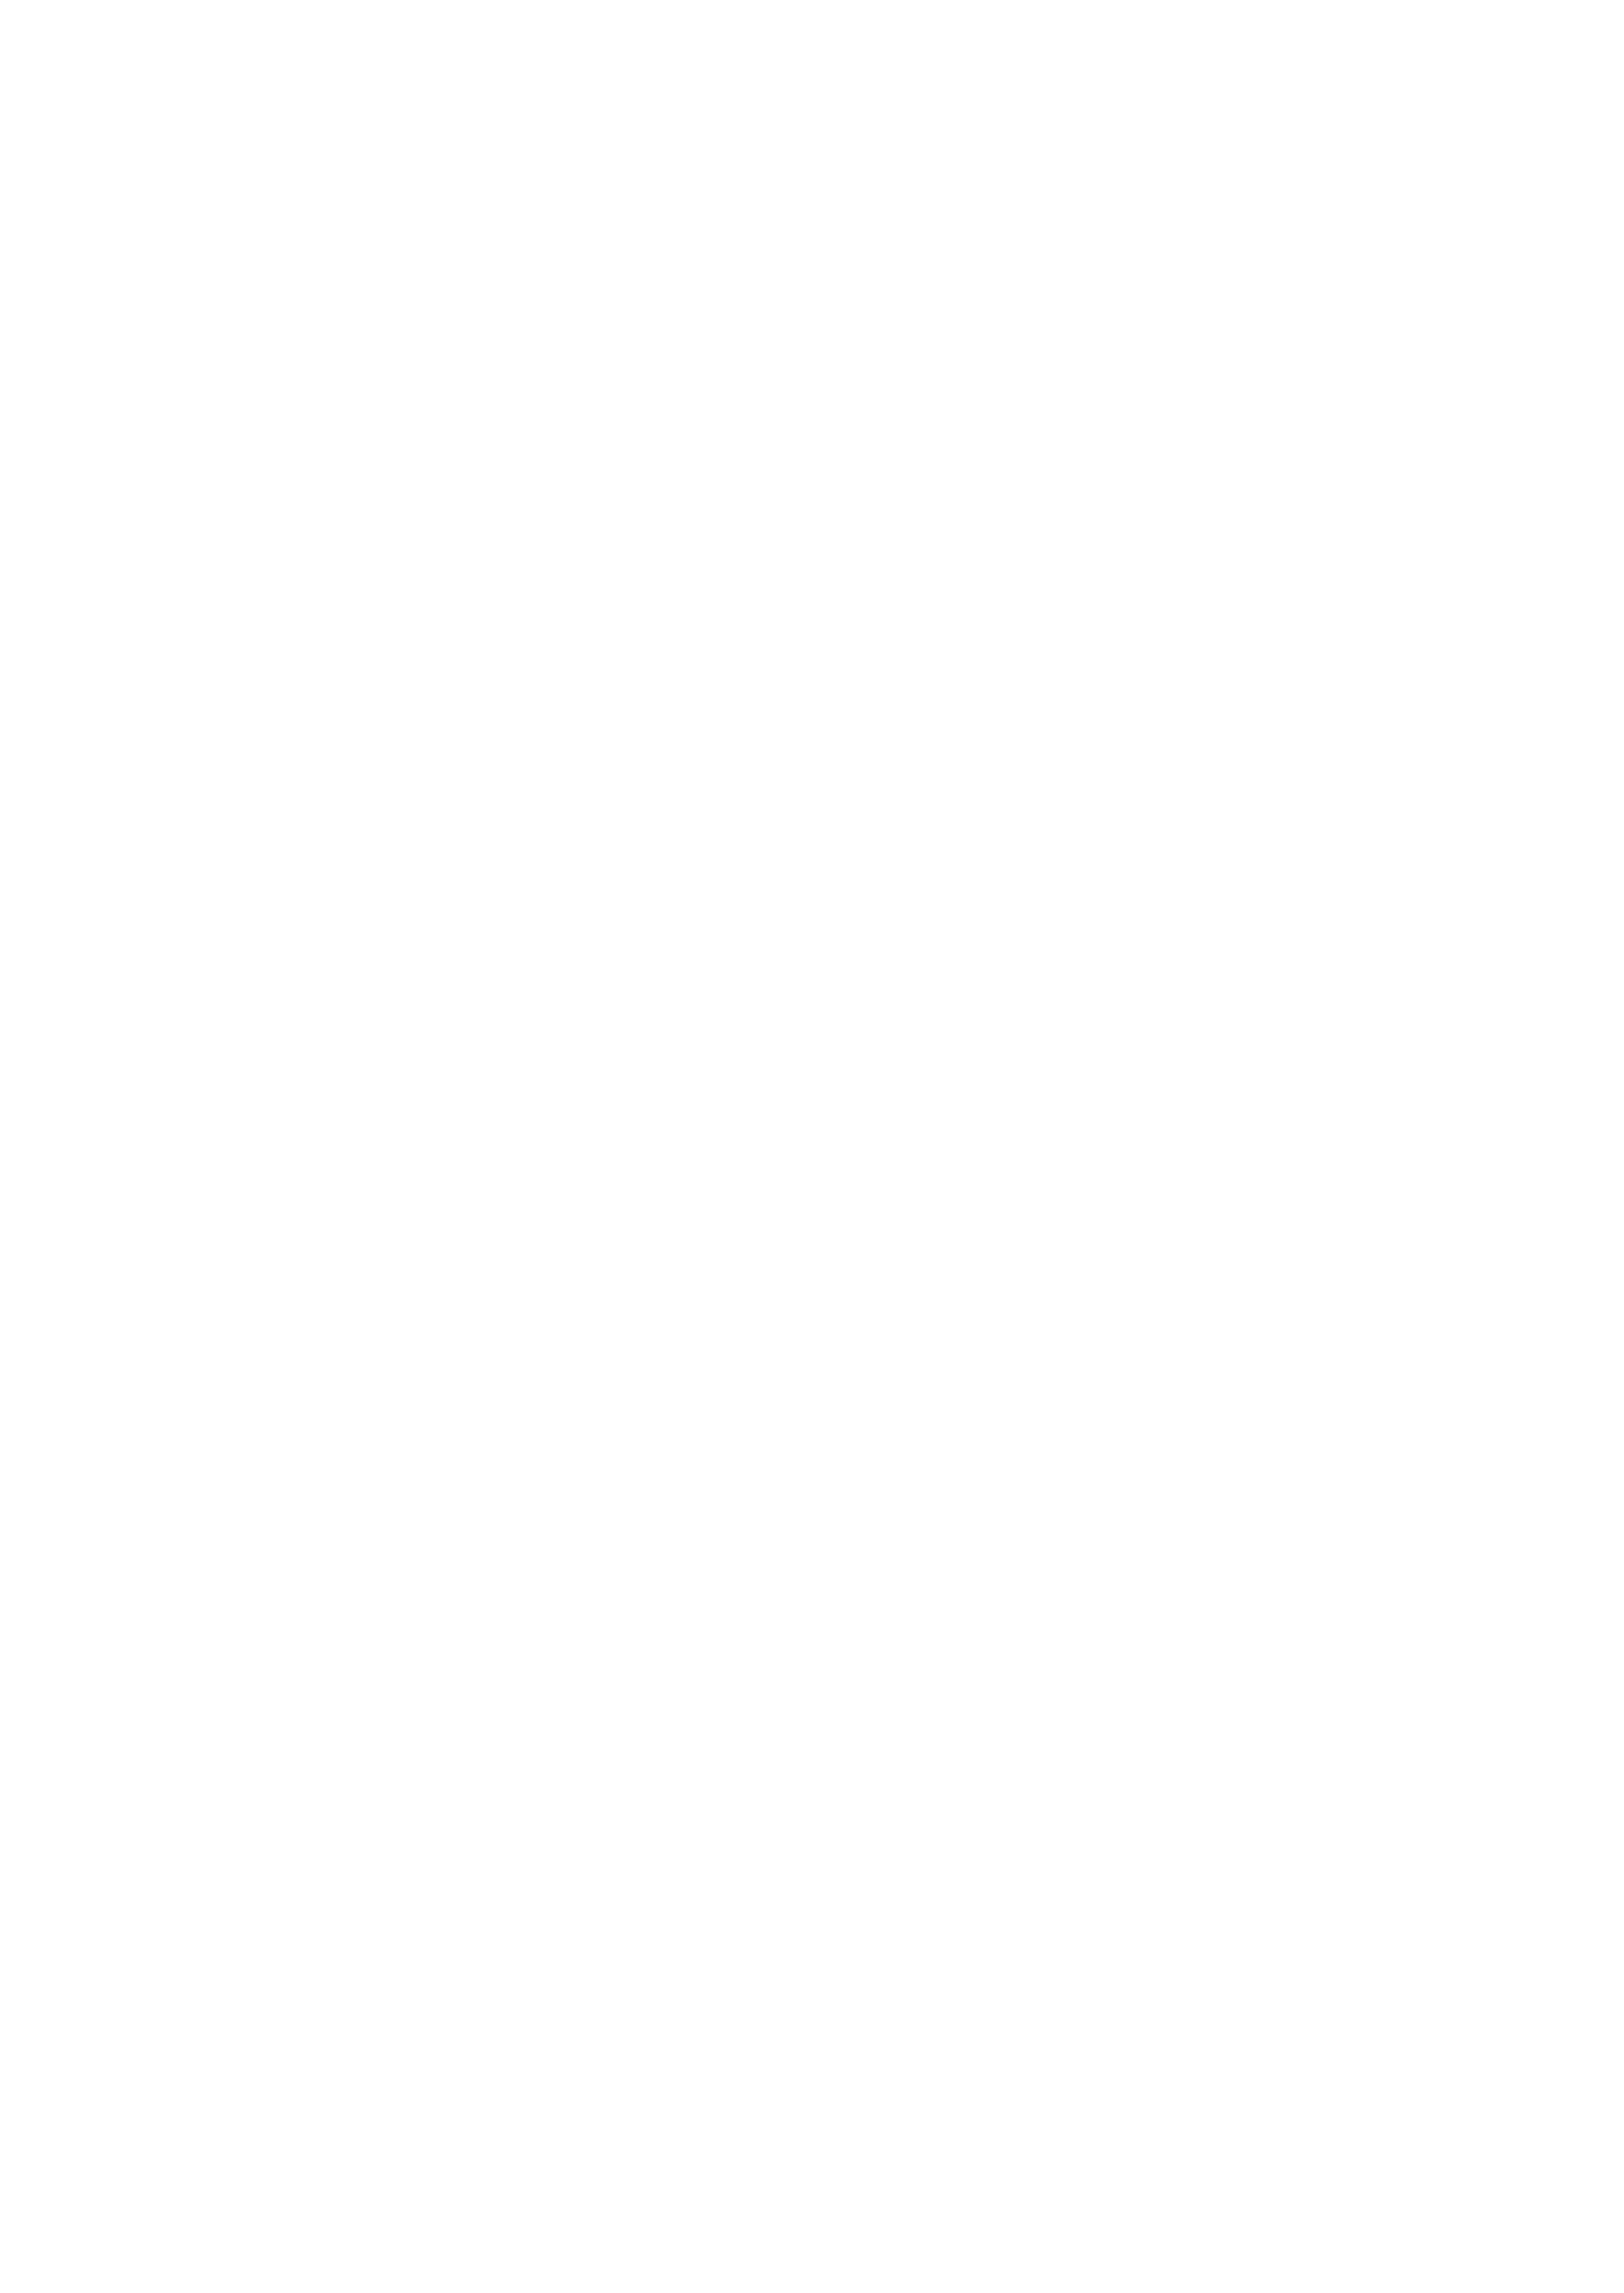 Qinexo